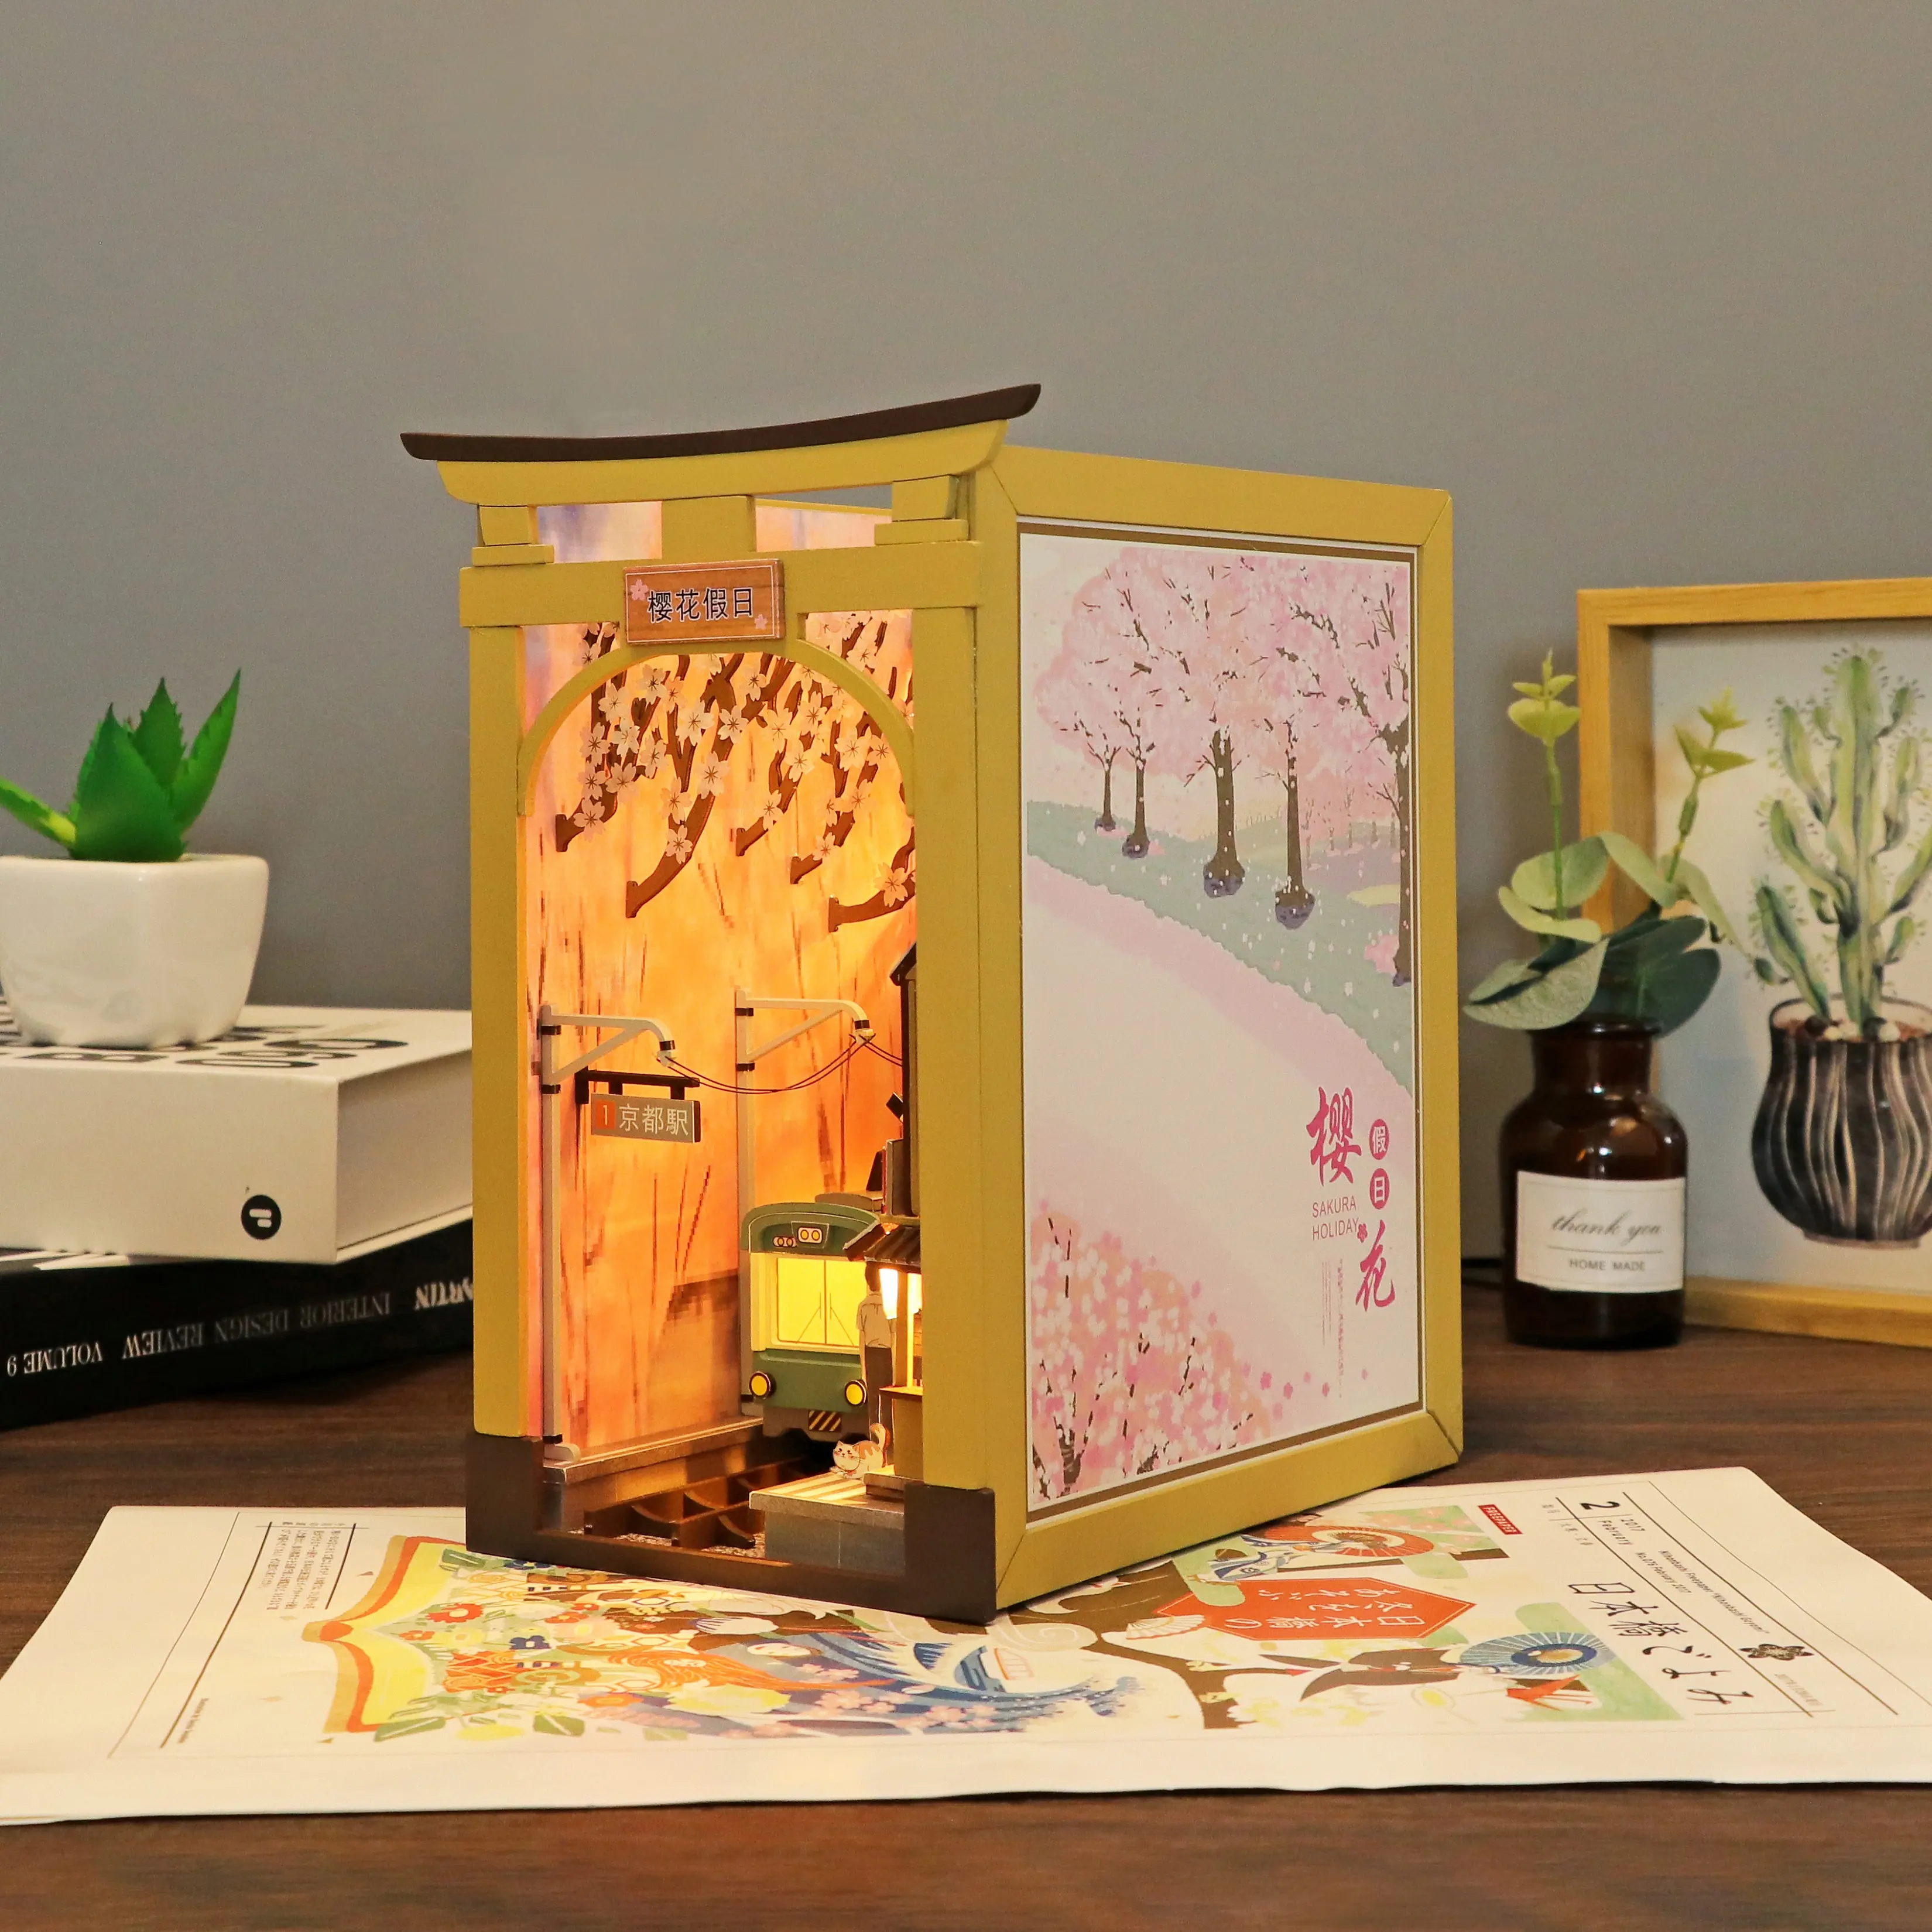 Hongda House Puzzel Diy Miniatuur Kit Boek Hoekje 3d Puzzel Houten Kunst Boekensteunen Boek Hoekje Model Kits Voor Volwassenen Om Boek Hoekje Te Bouwen